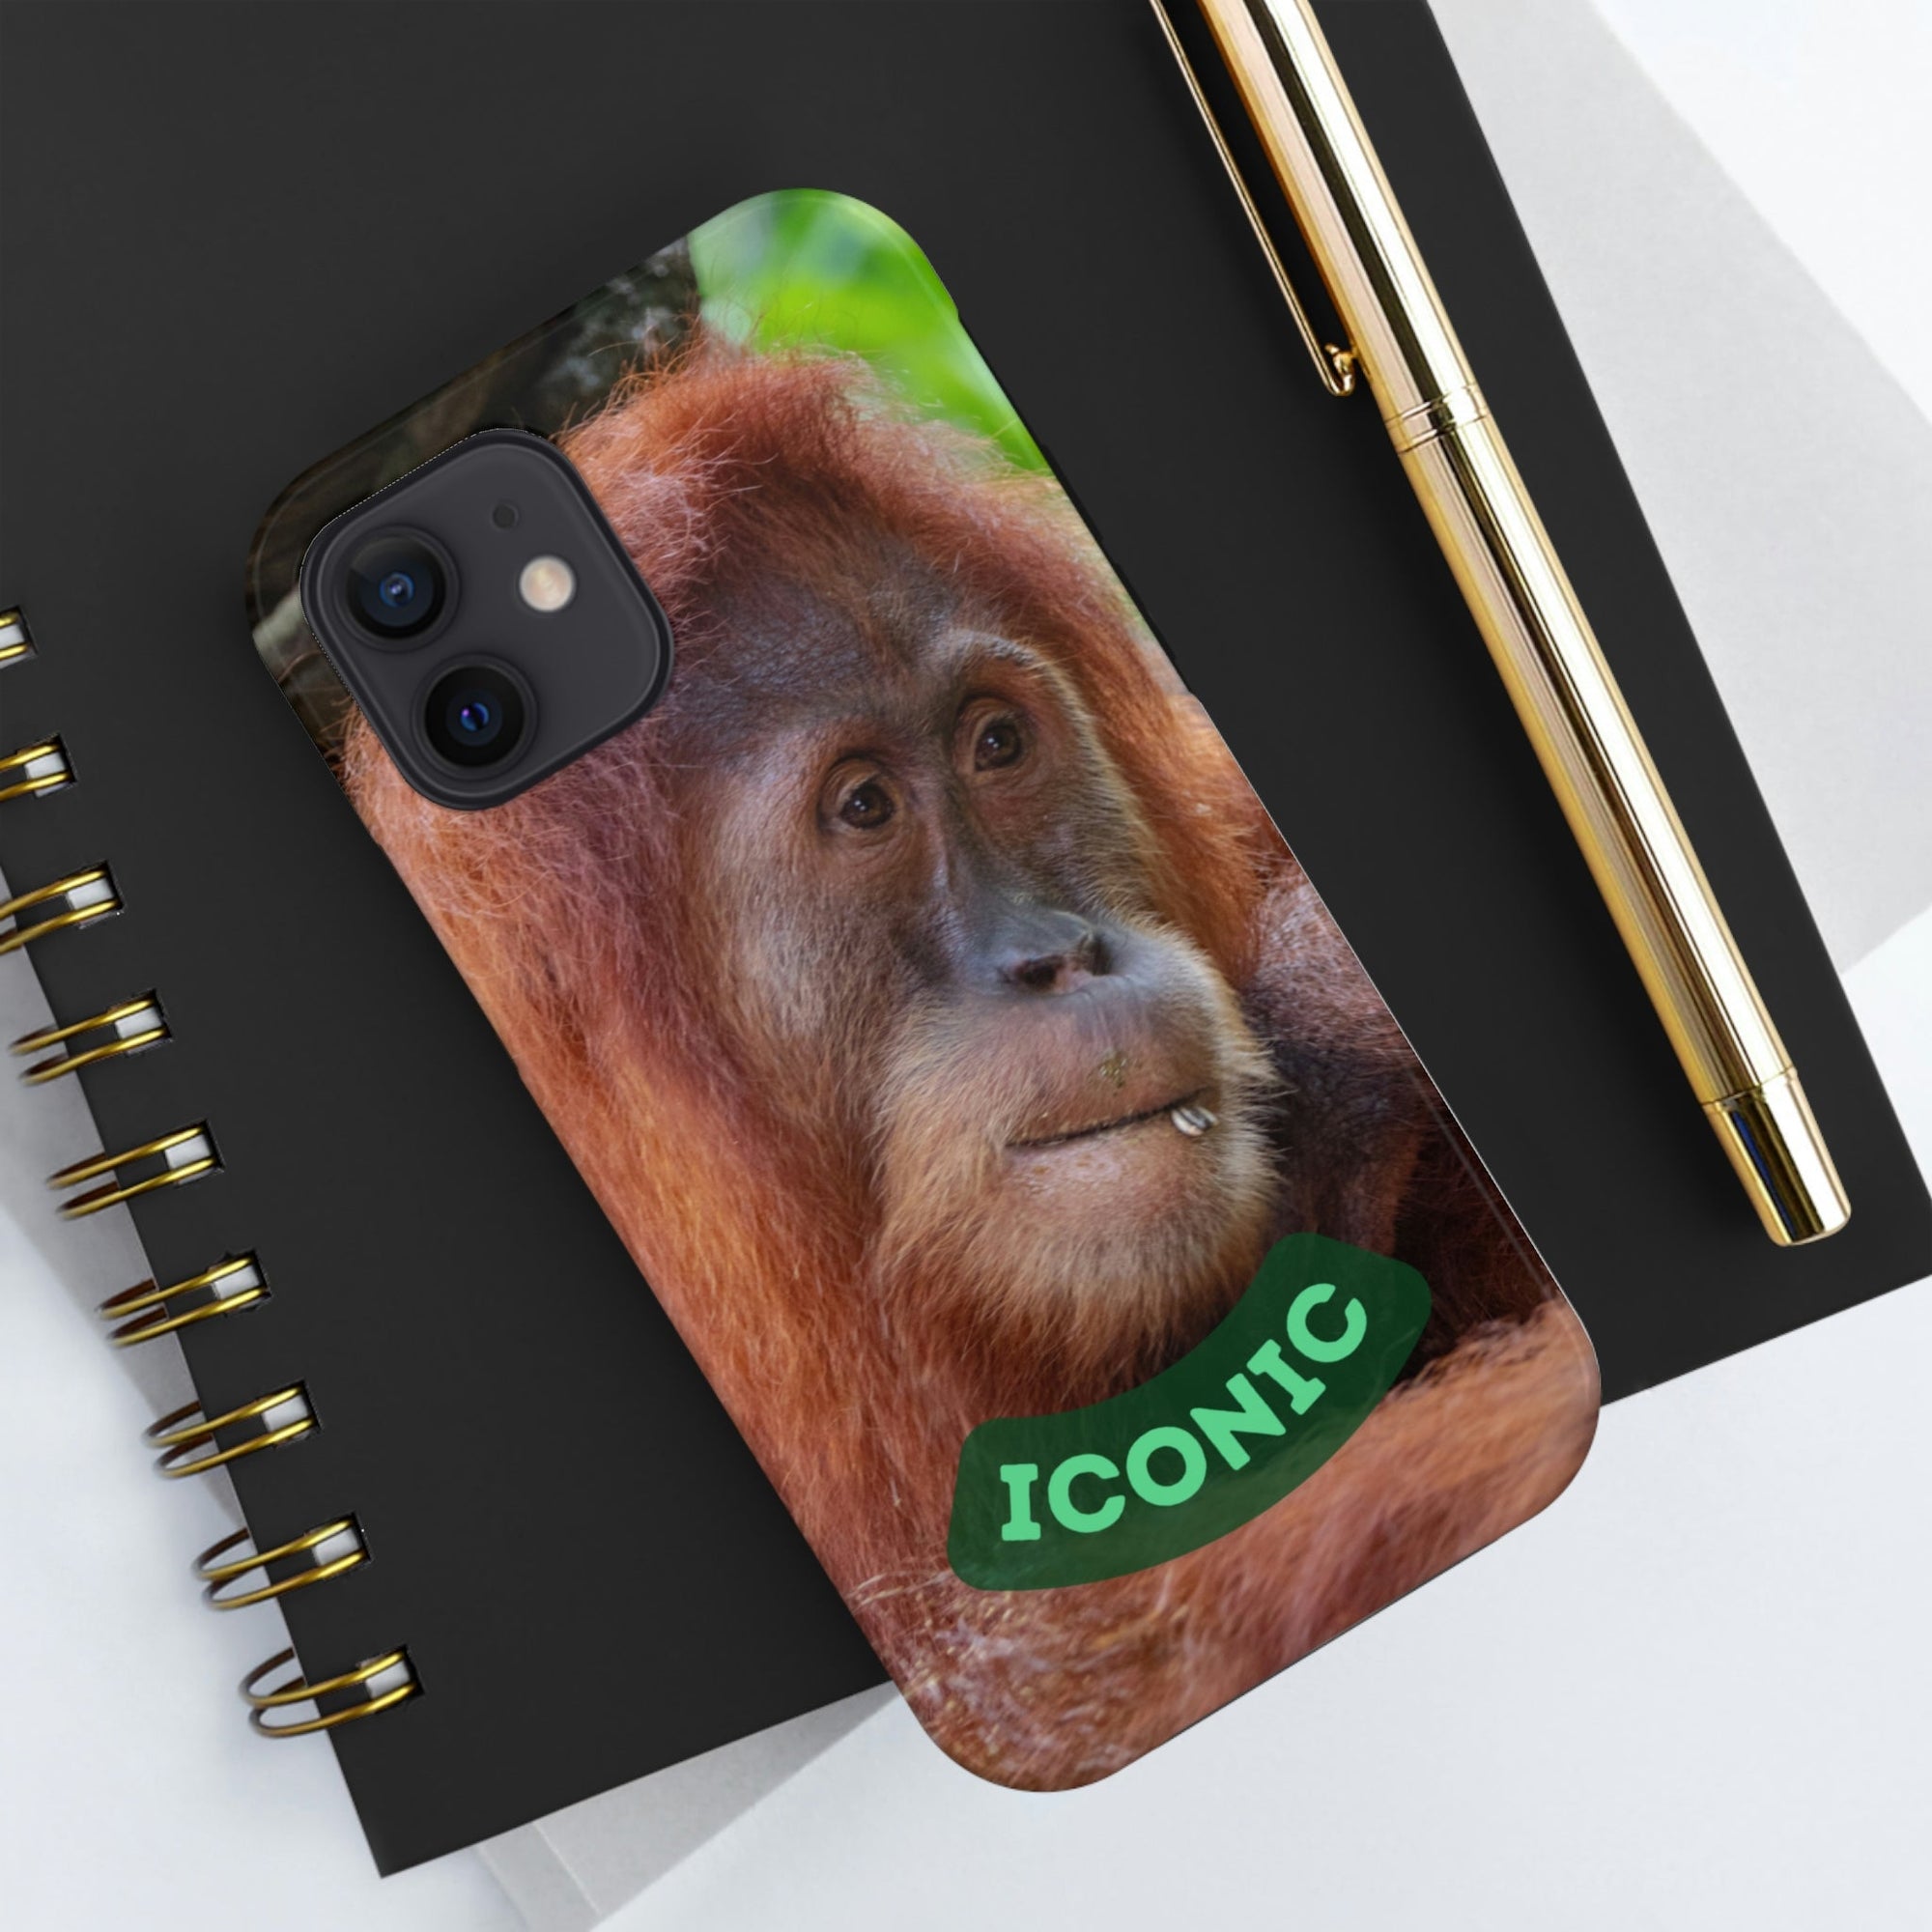 Tough Phone Cases, Case-Mate Iconic Orangutan - Primation